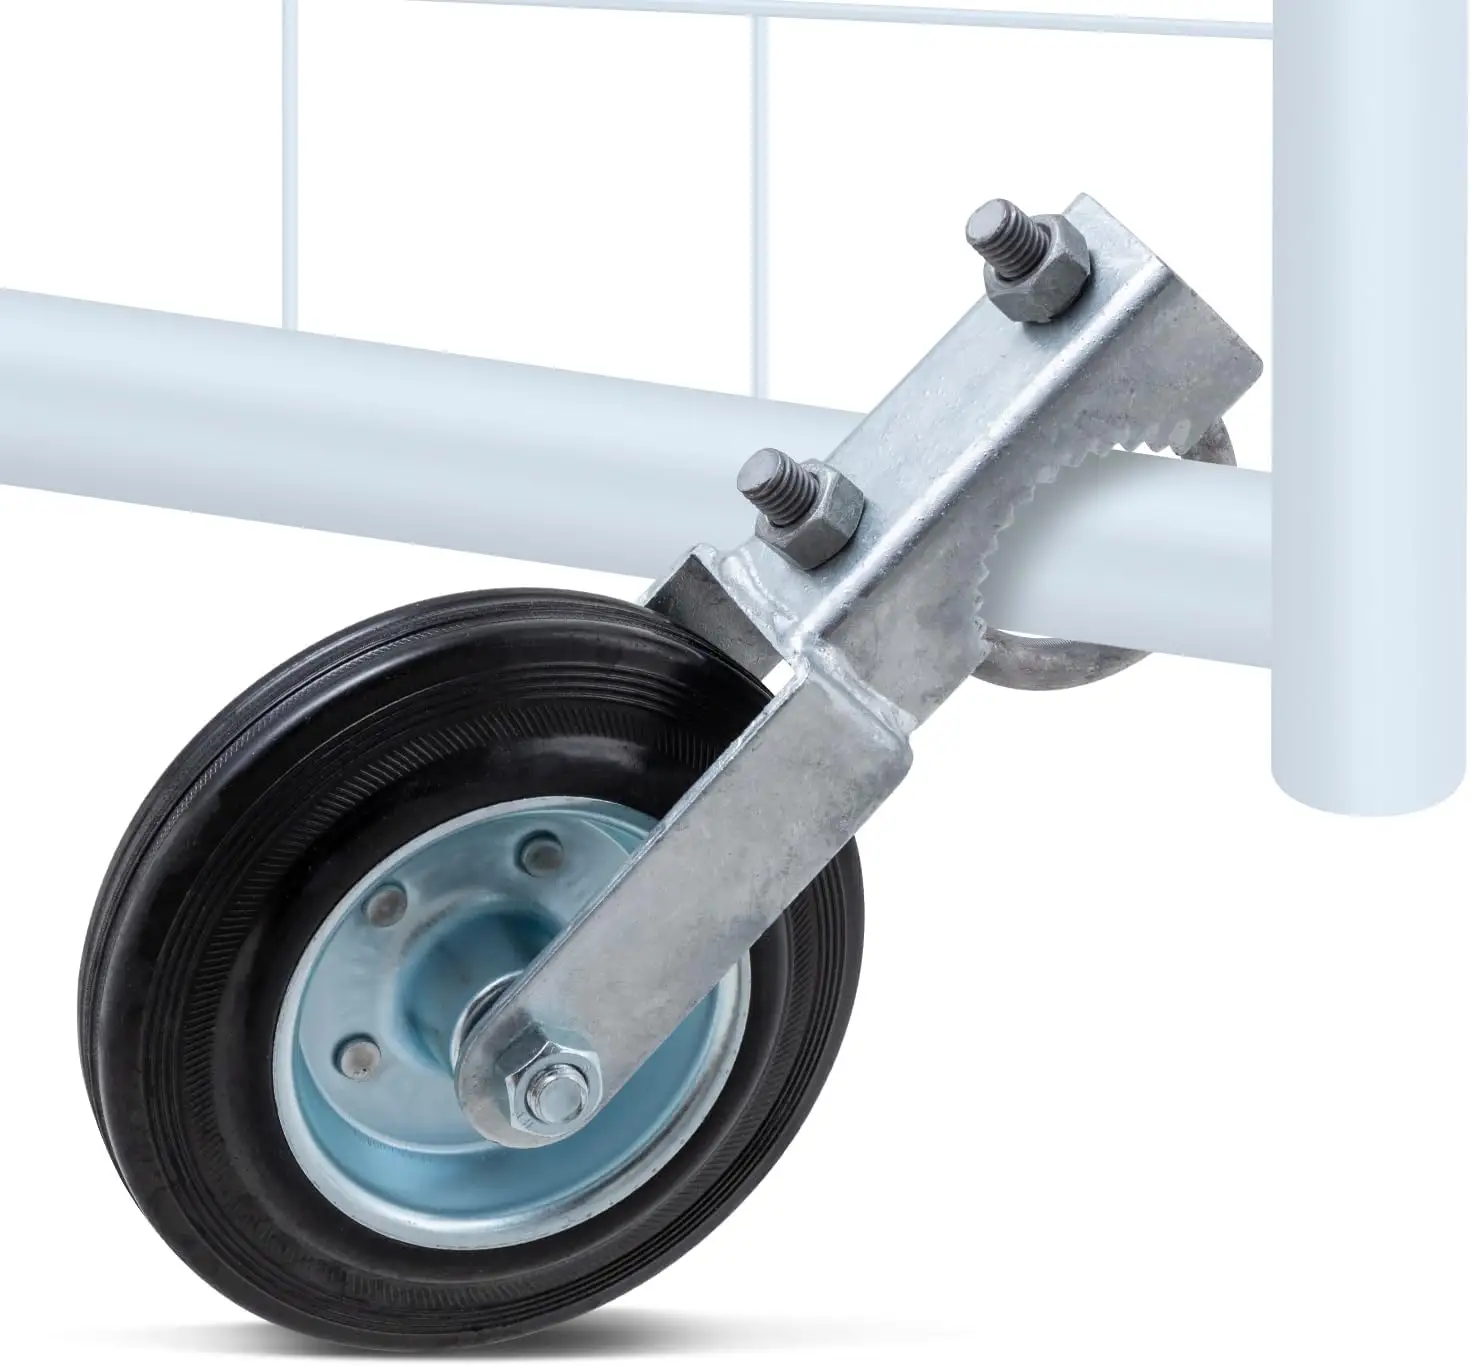 عجلة مساعدة لدعم بوابة معلقة على سلسلة من الأسوار المتحركة بحجم 6 بوصة مخصصة من المصنع